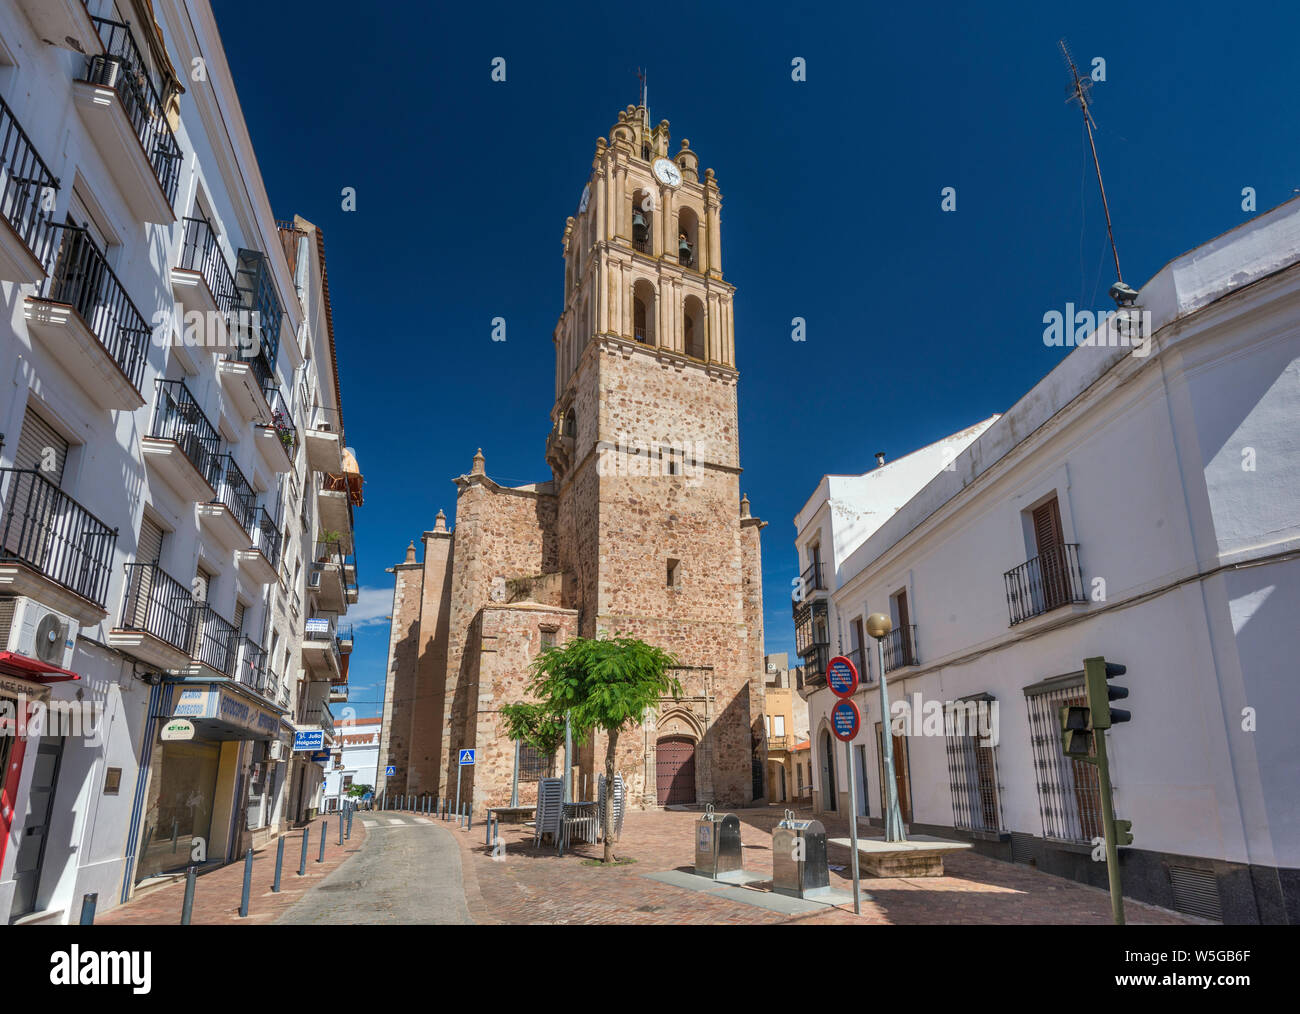 Iglesia de Nuestra Señora de la Purificación, 16th century church in Almendralejo, Tierra de Barros region, Badajoz province, Extremadura, Spain Stock Photo